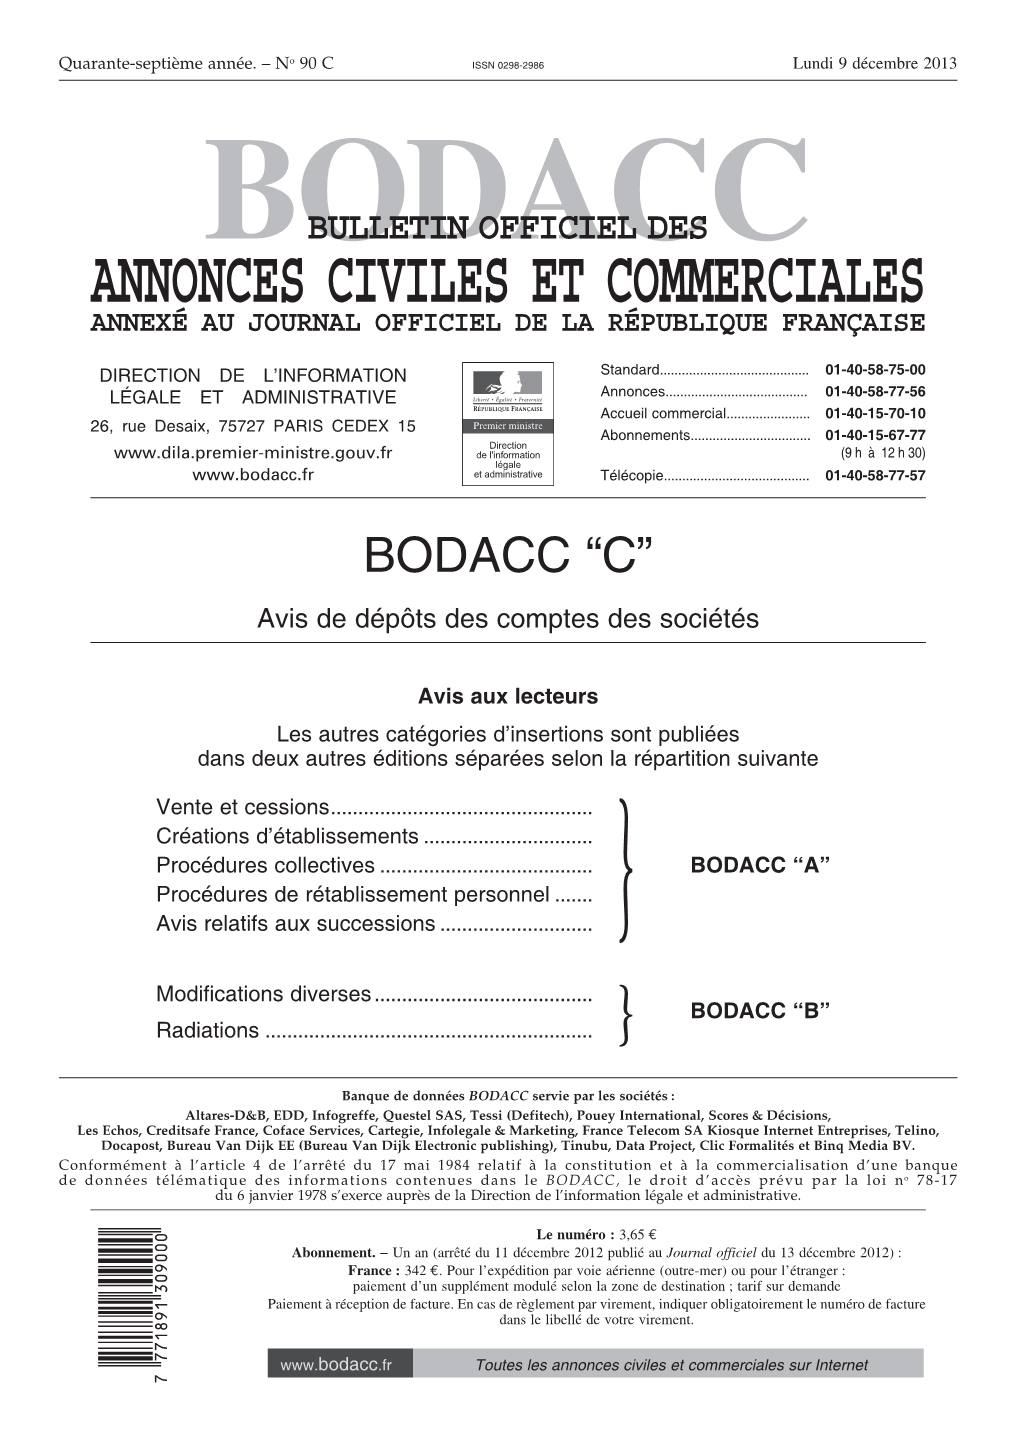 Bodacc Bulletin Officiel Des Annonces Civiles Et Commerciales Annexé Au Journal Officiel De La République Française